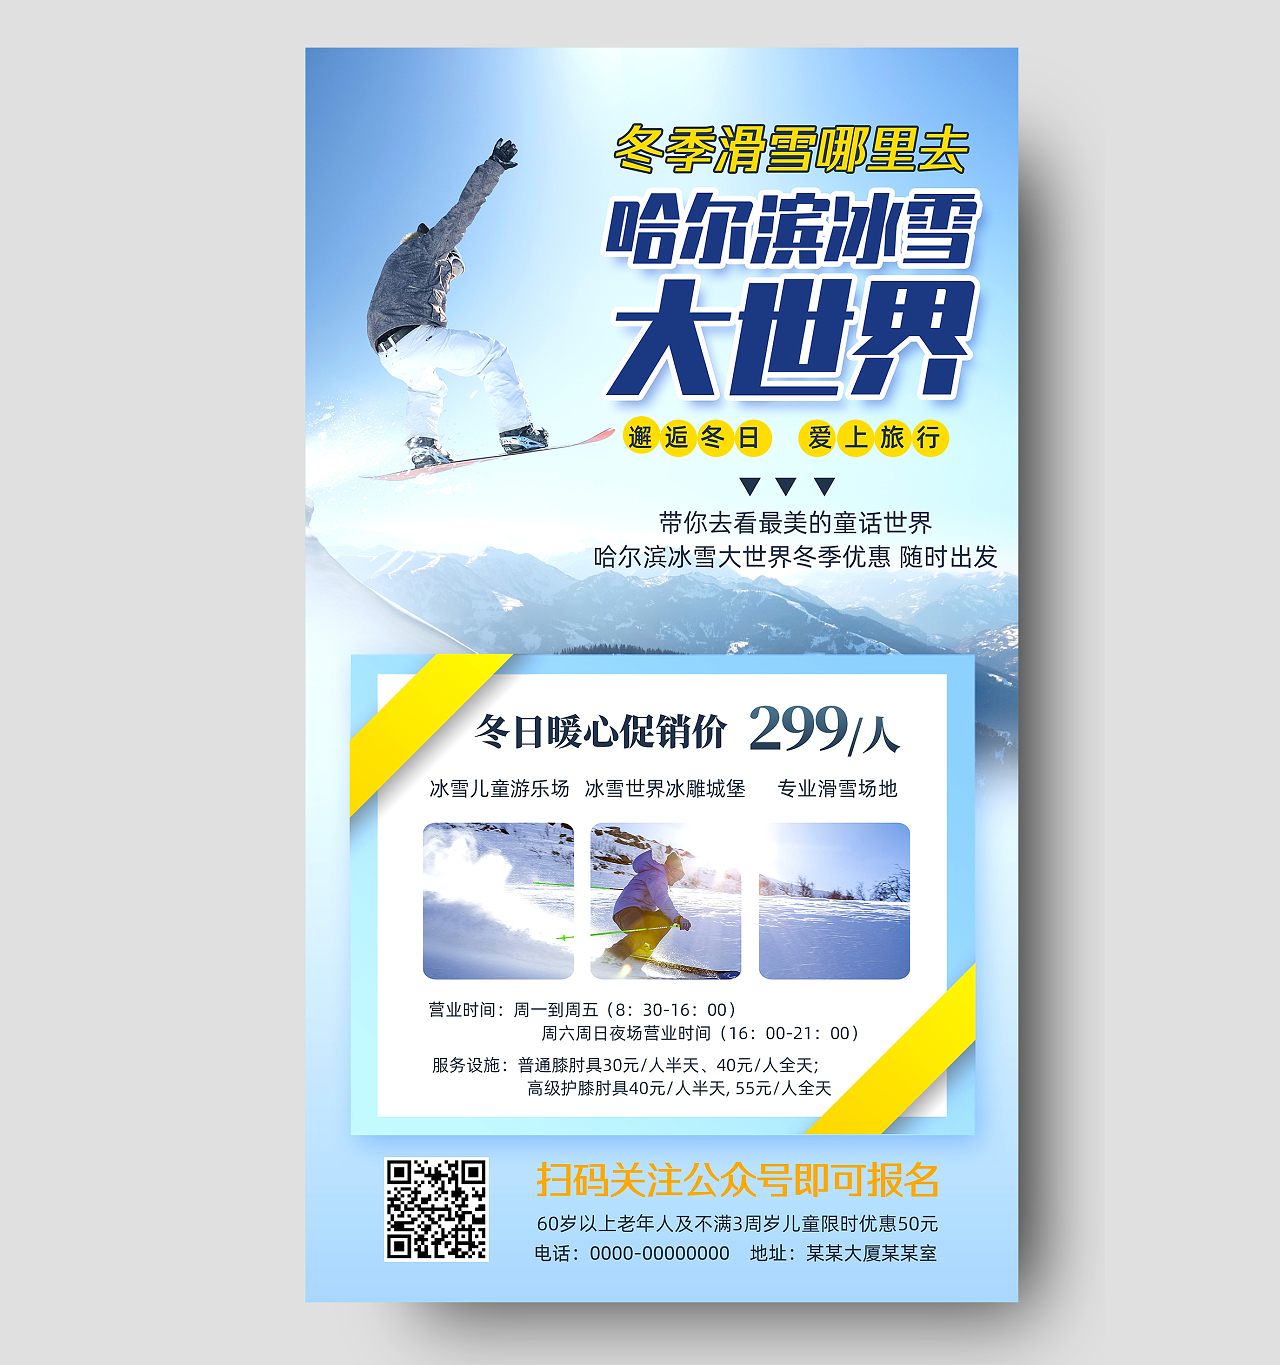 蓝色简约哈尔滨冰雪大世界冬季滑雪手机海报